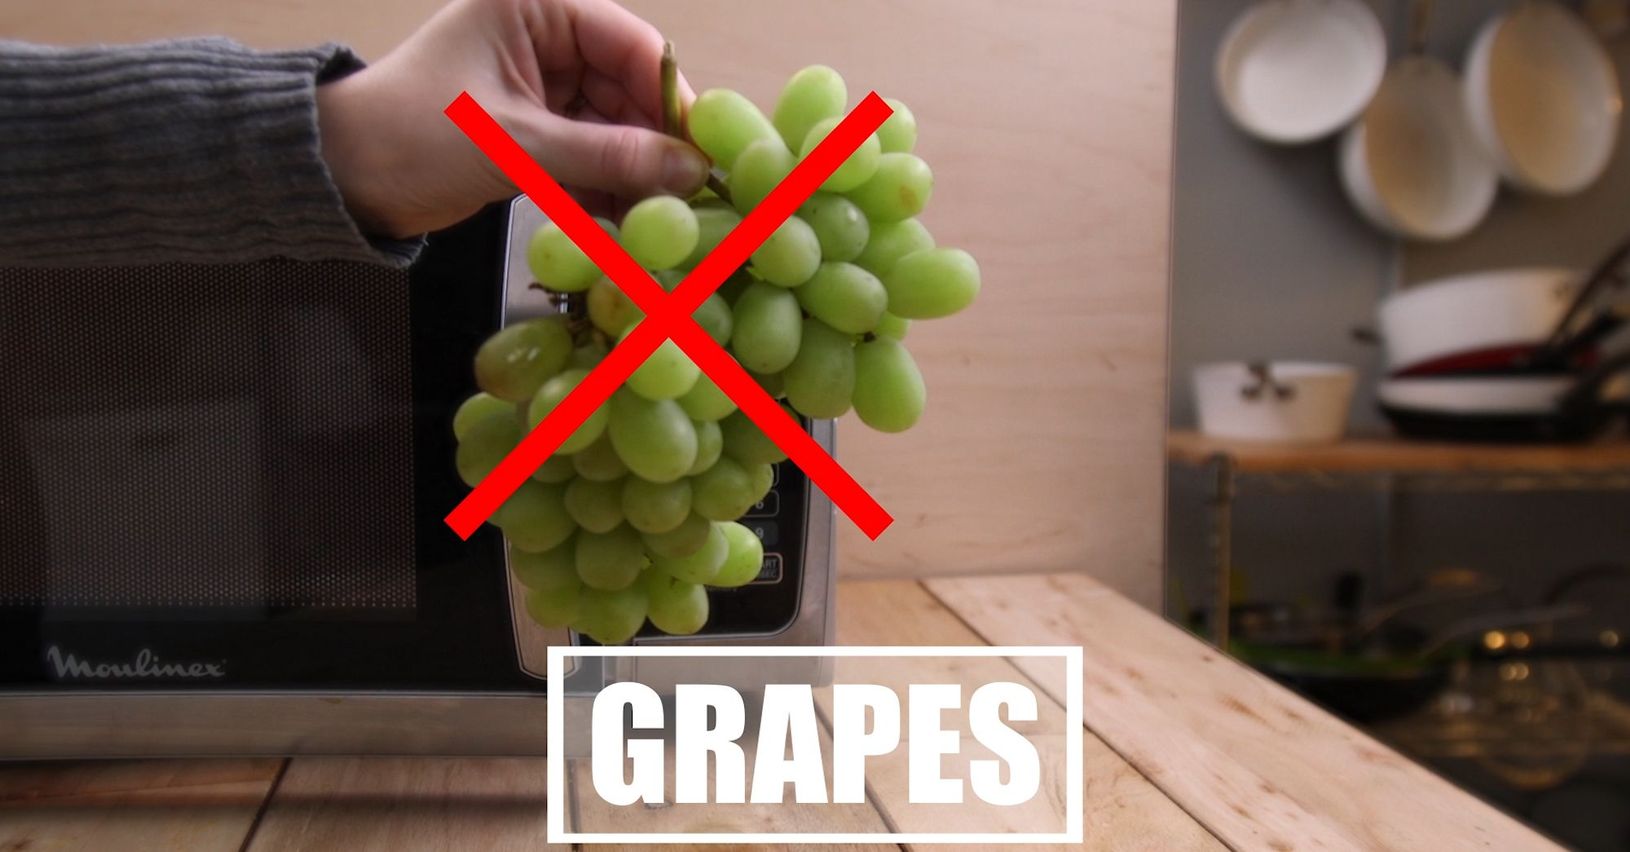 Если засунуть виноград в микроволновку, он взорвётся? правда или ложь